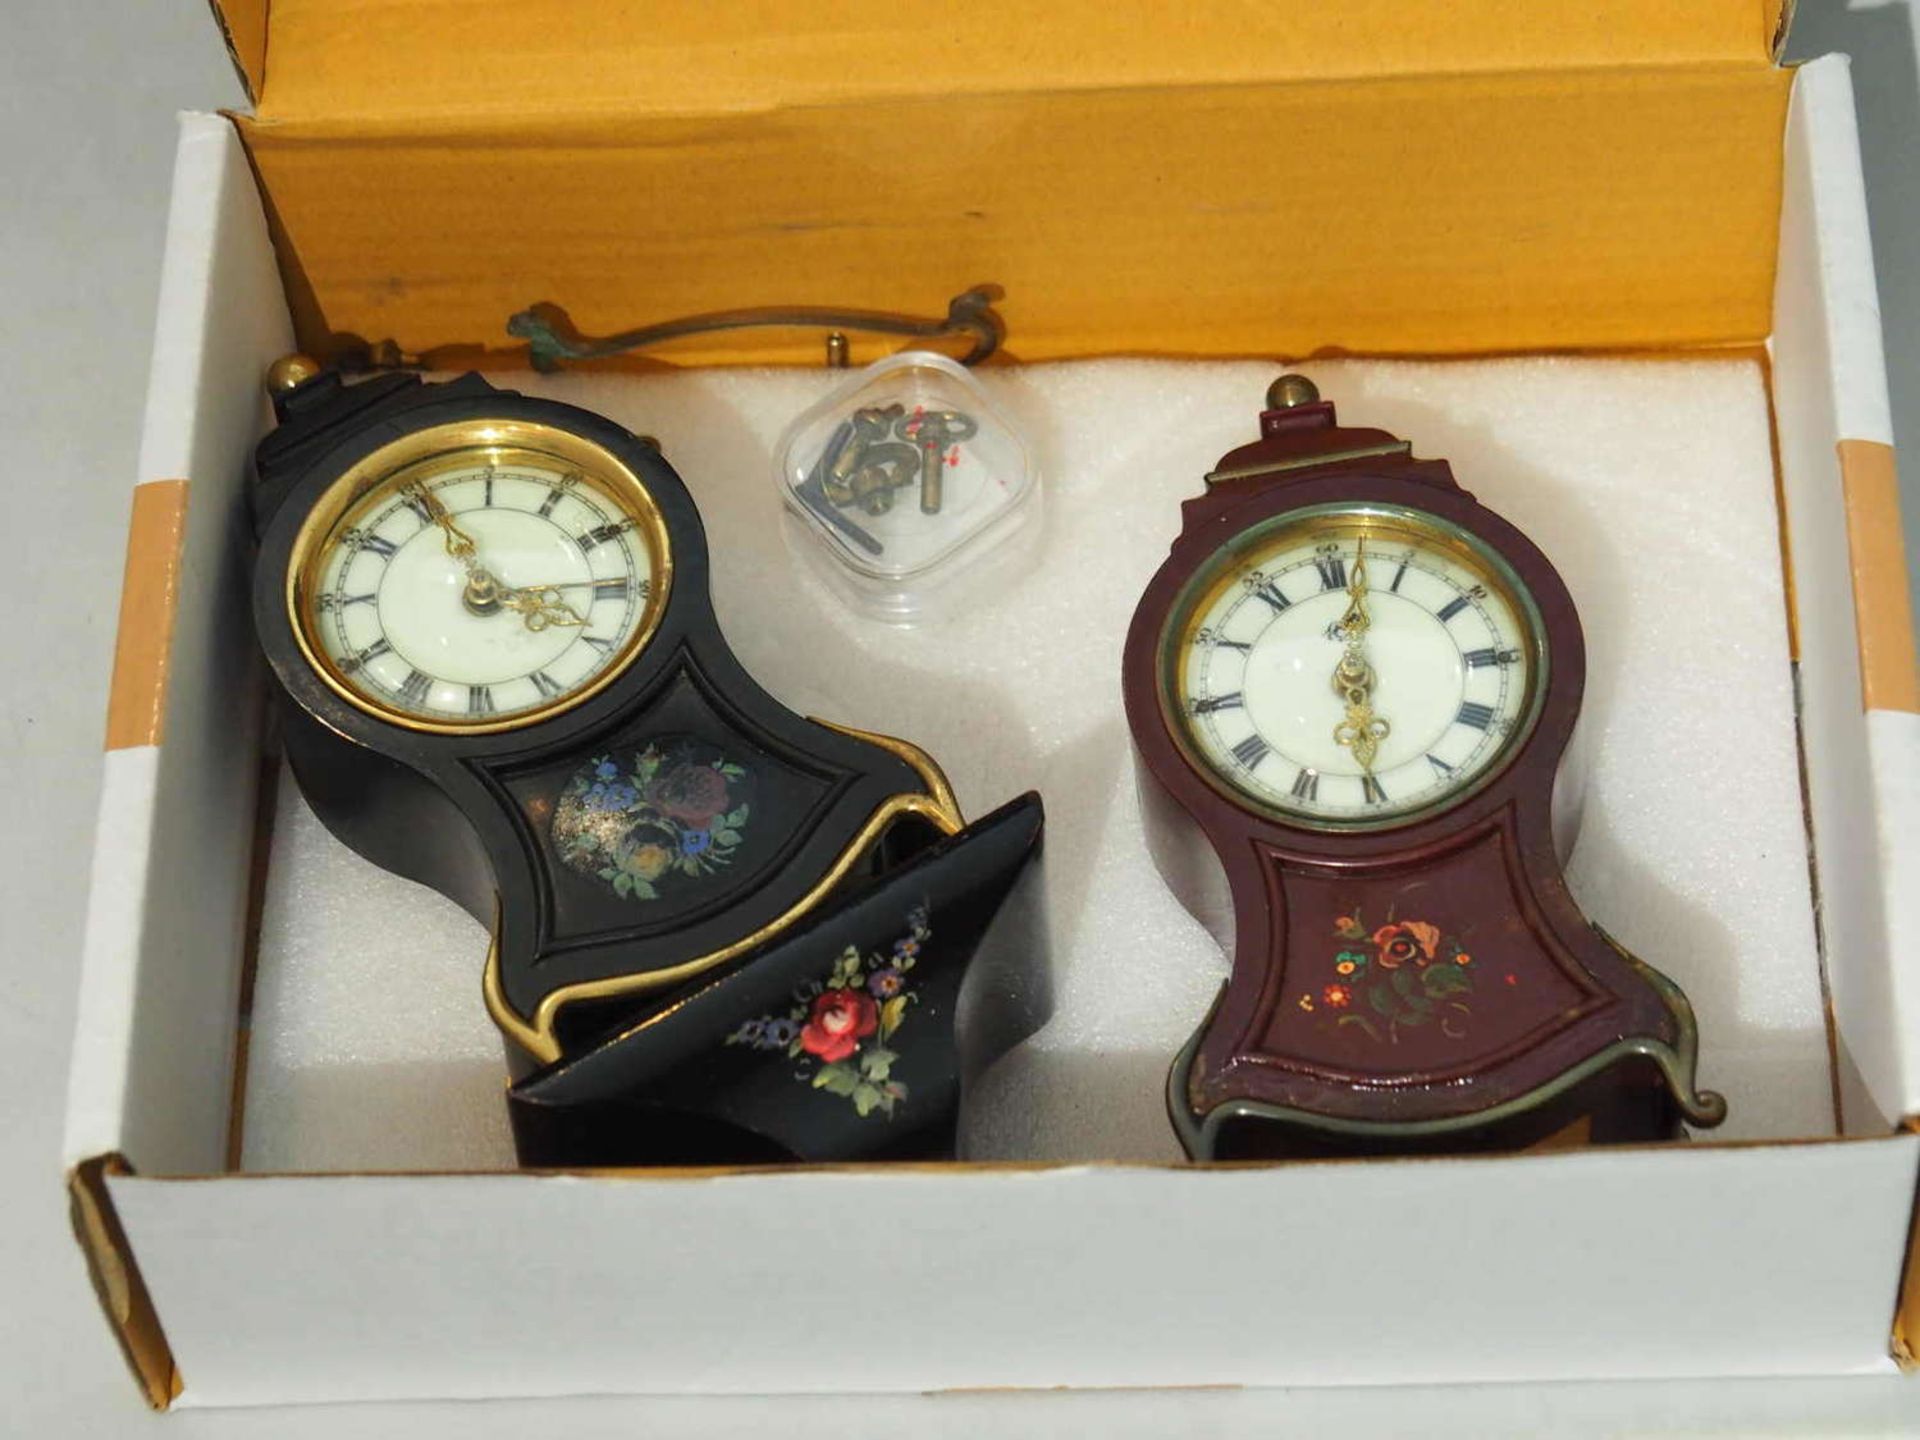 2 kleinere Uhren zum Reparieren - sicher interessant!2 smaller clocks to repair - certainly